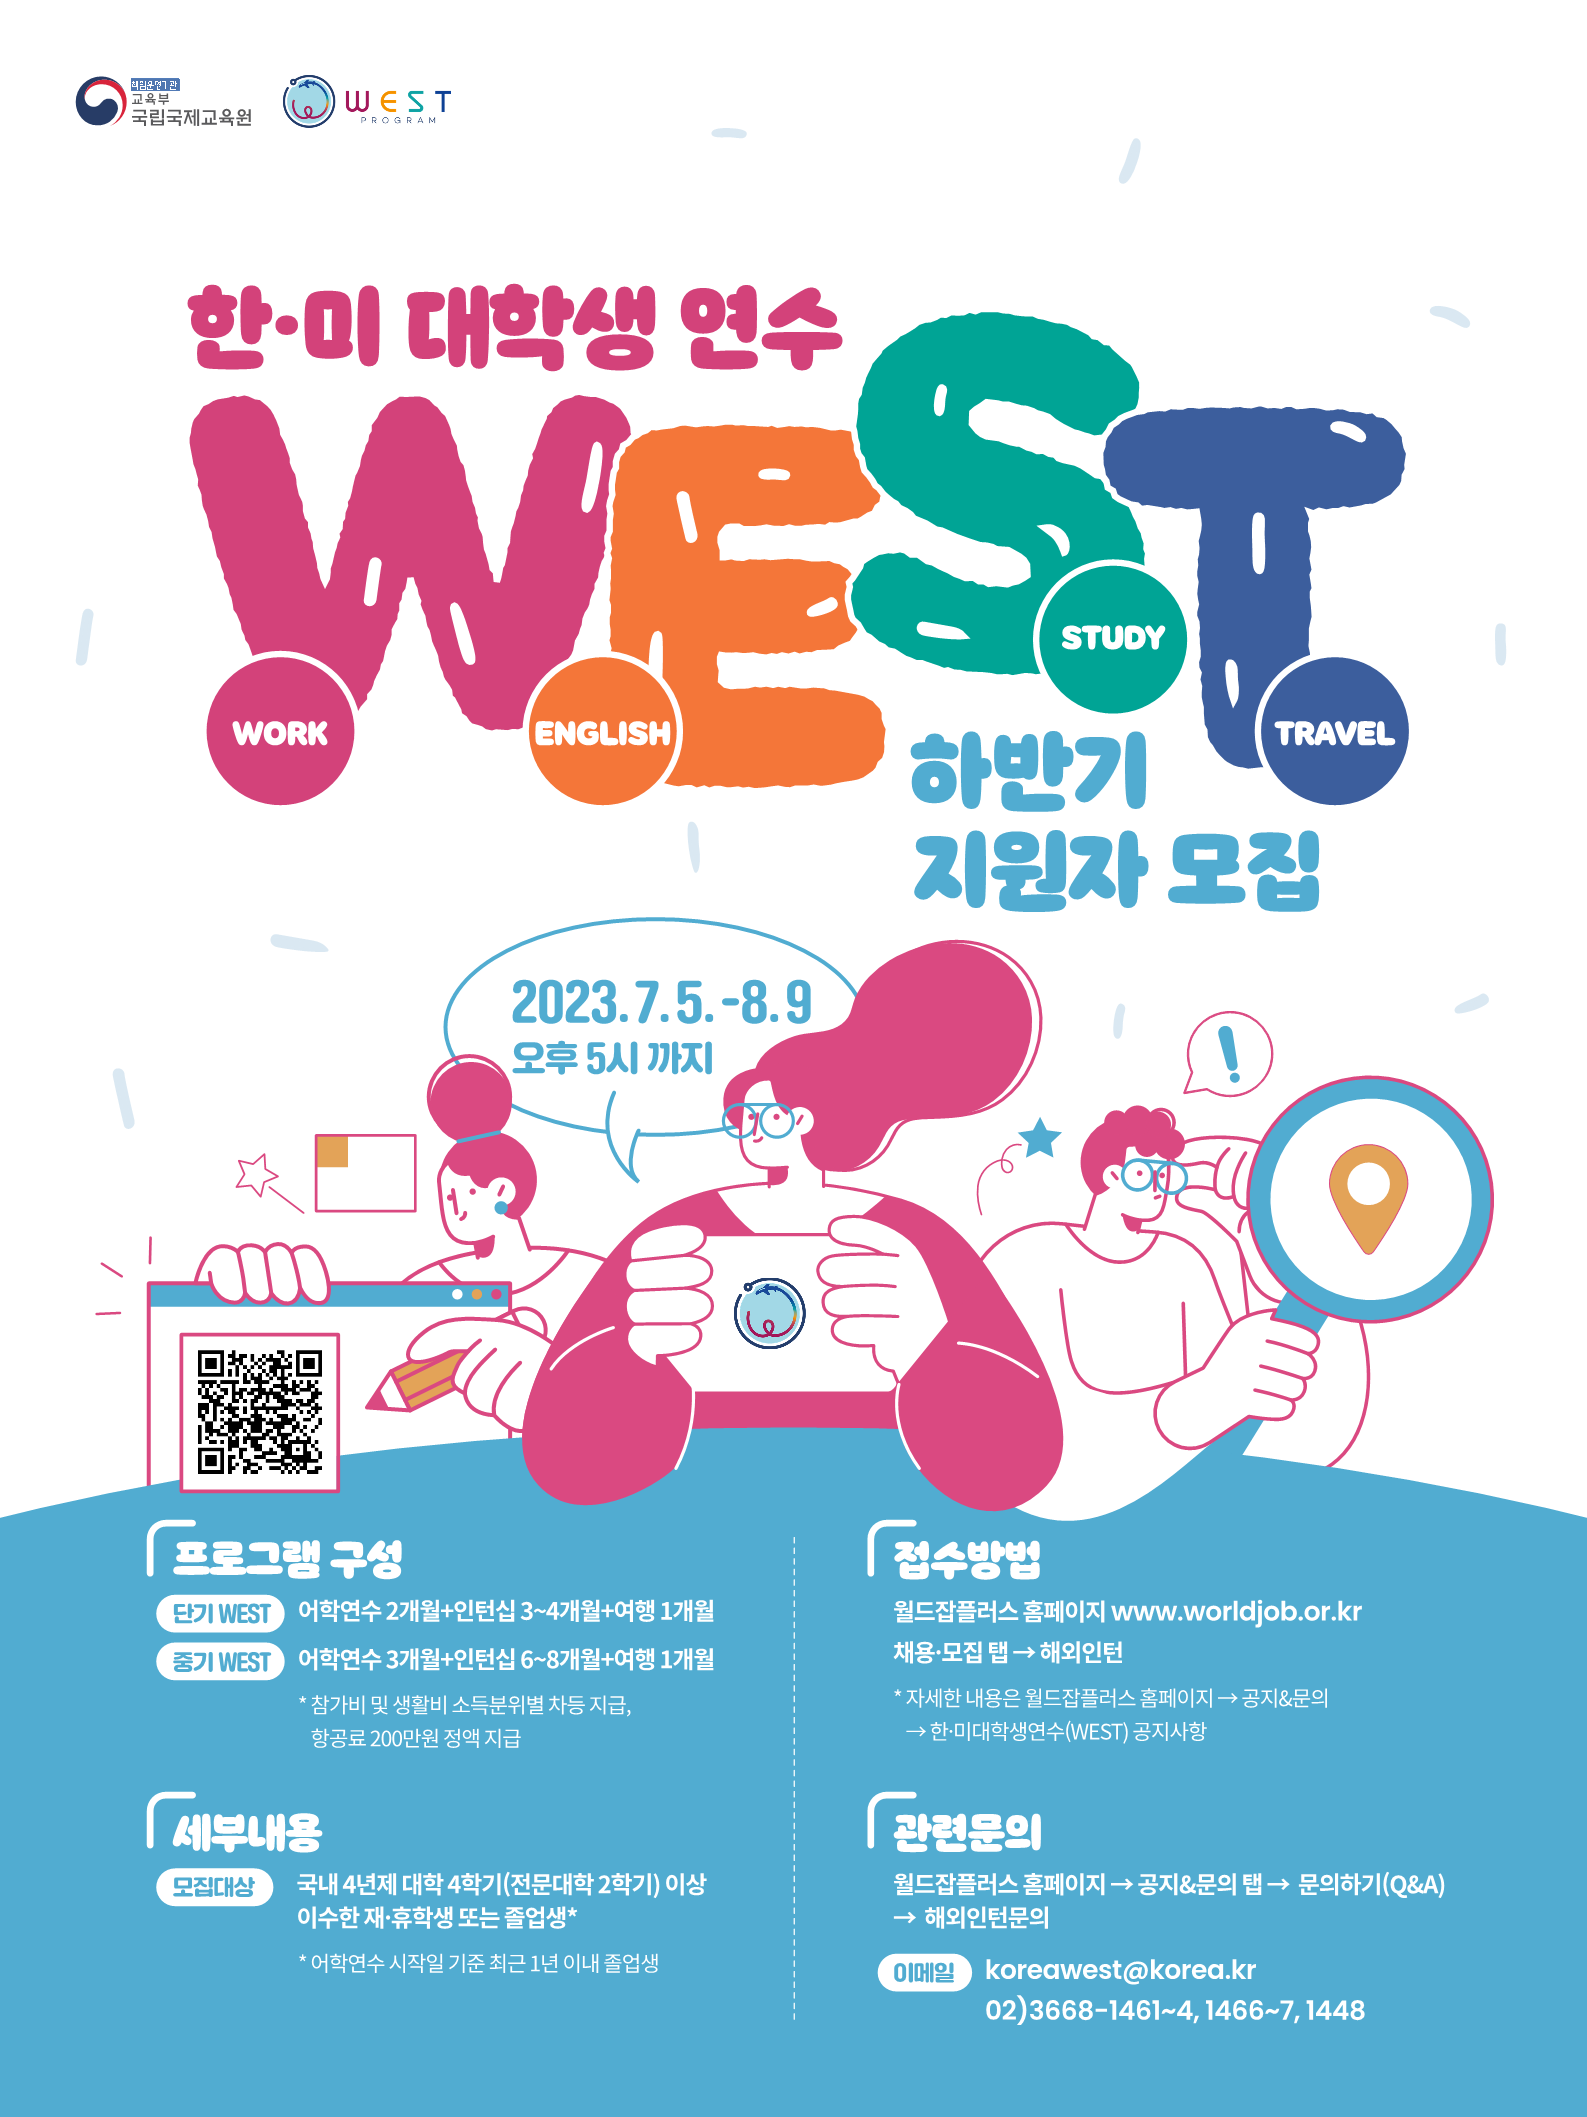 2023 하반기 WEST 포스터(웹)_1.png